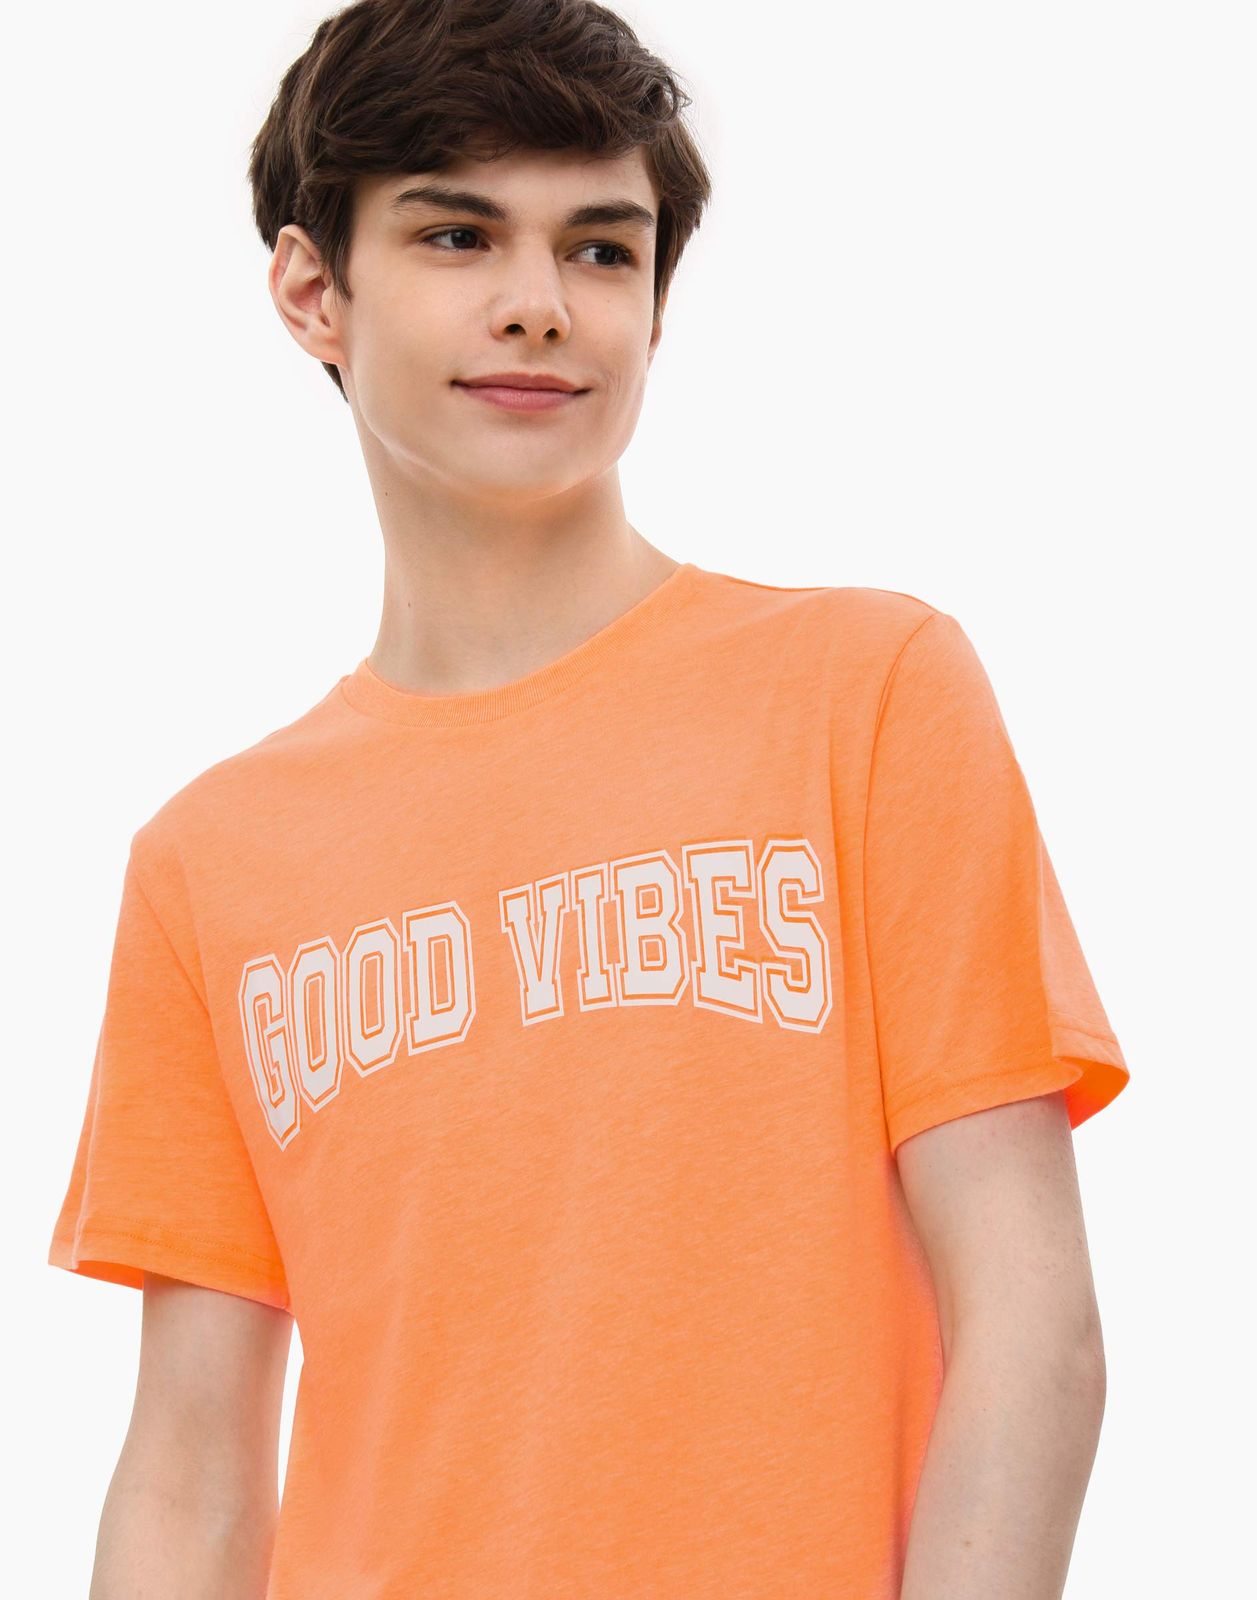 Футболка Standard с вышивкой Good Vibes для мальчика BKT014055 цв. оранжевый р.140